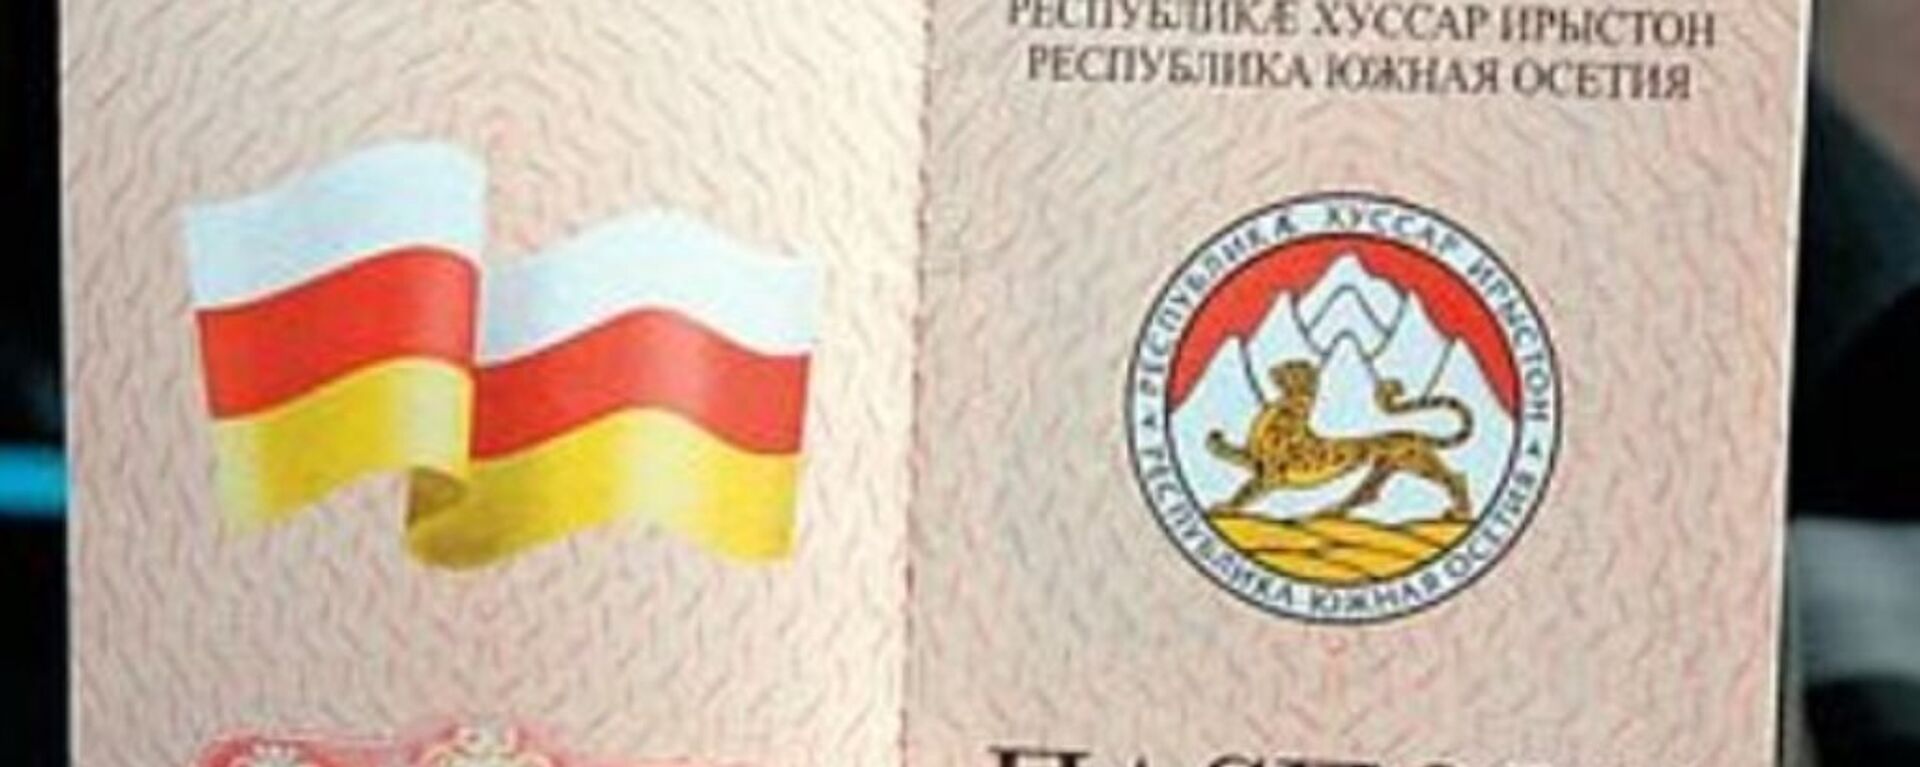 Паспорт гражданина РЮО - Sputnik Южная Осетия, 1920, 25.03.2021